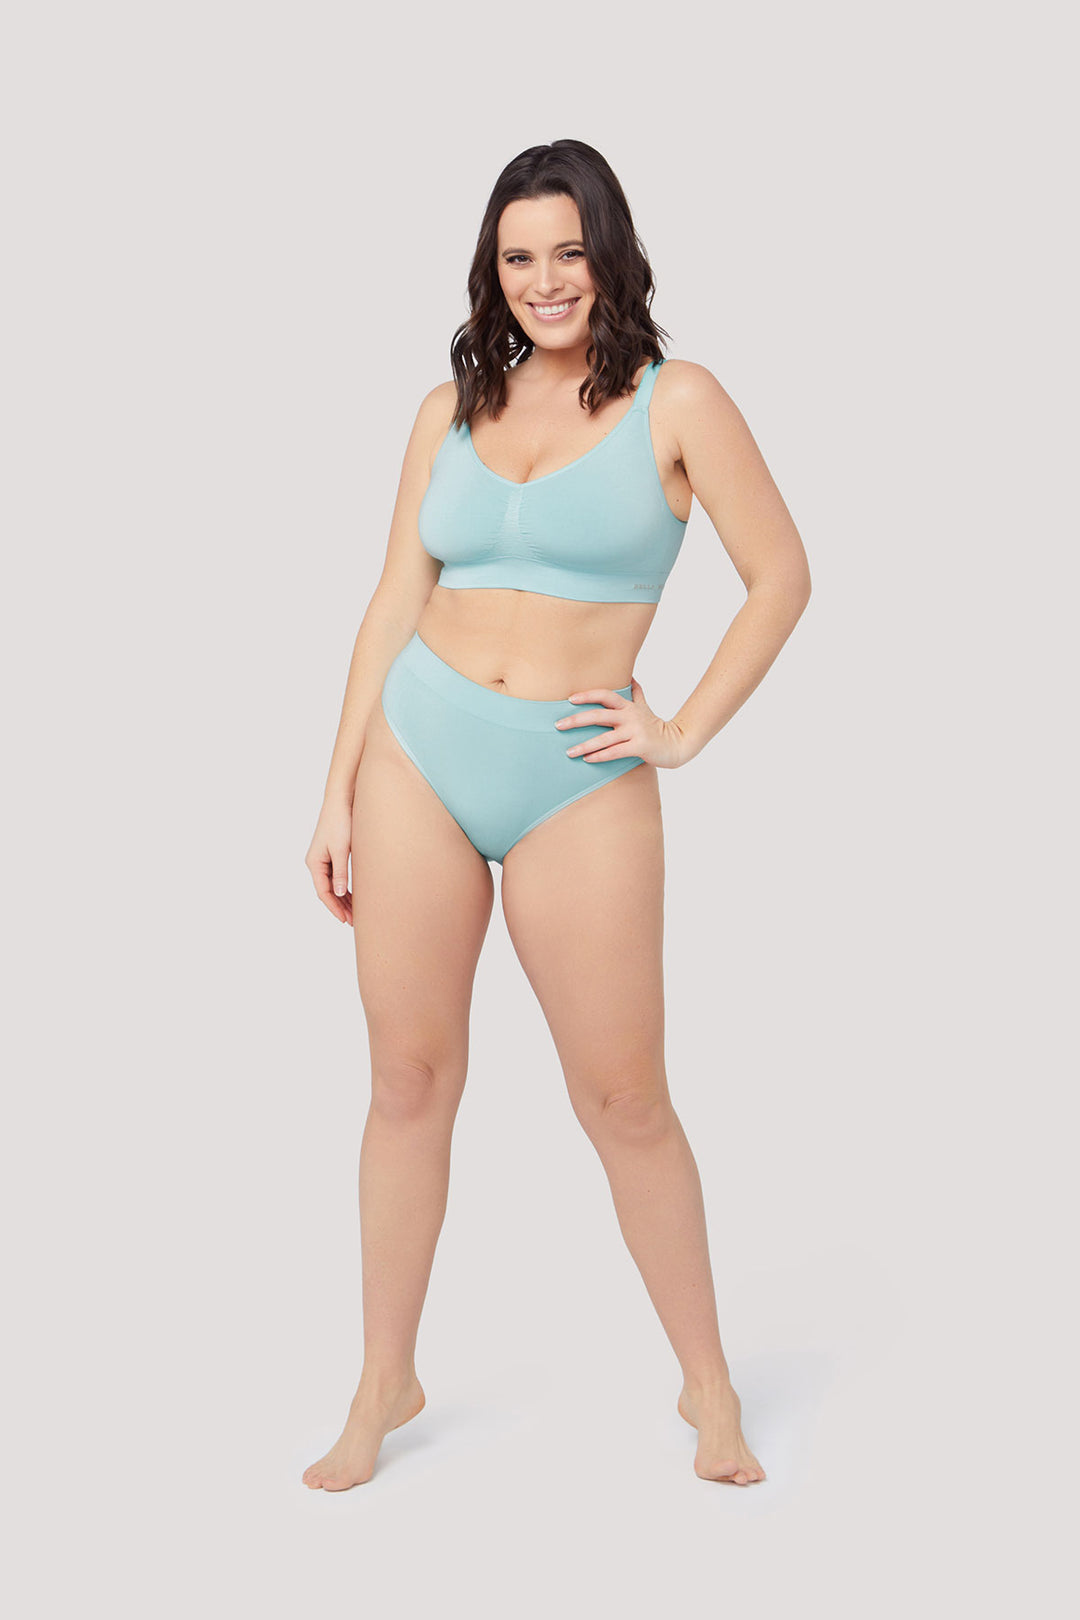 Women's Matching Underwear Sets – BELLA BODIES AUSTRALIA